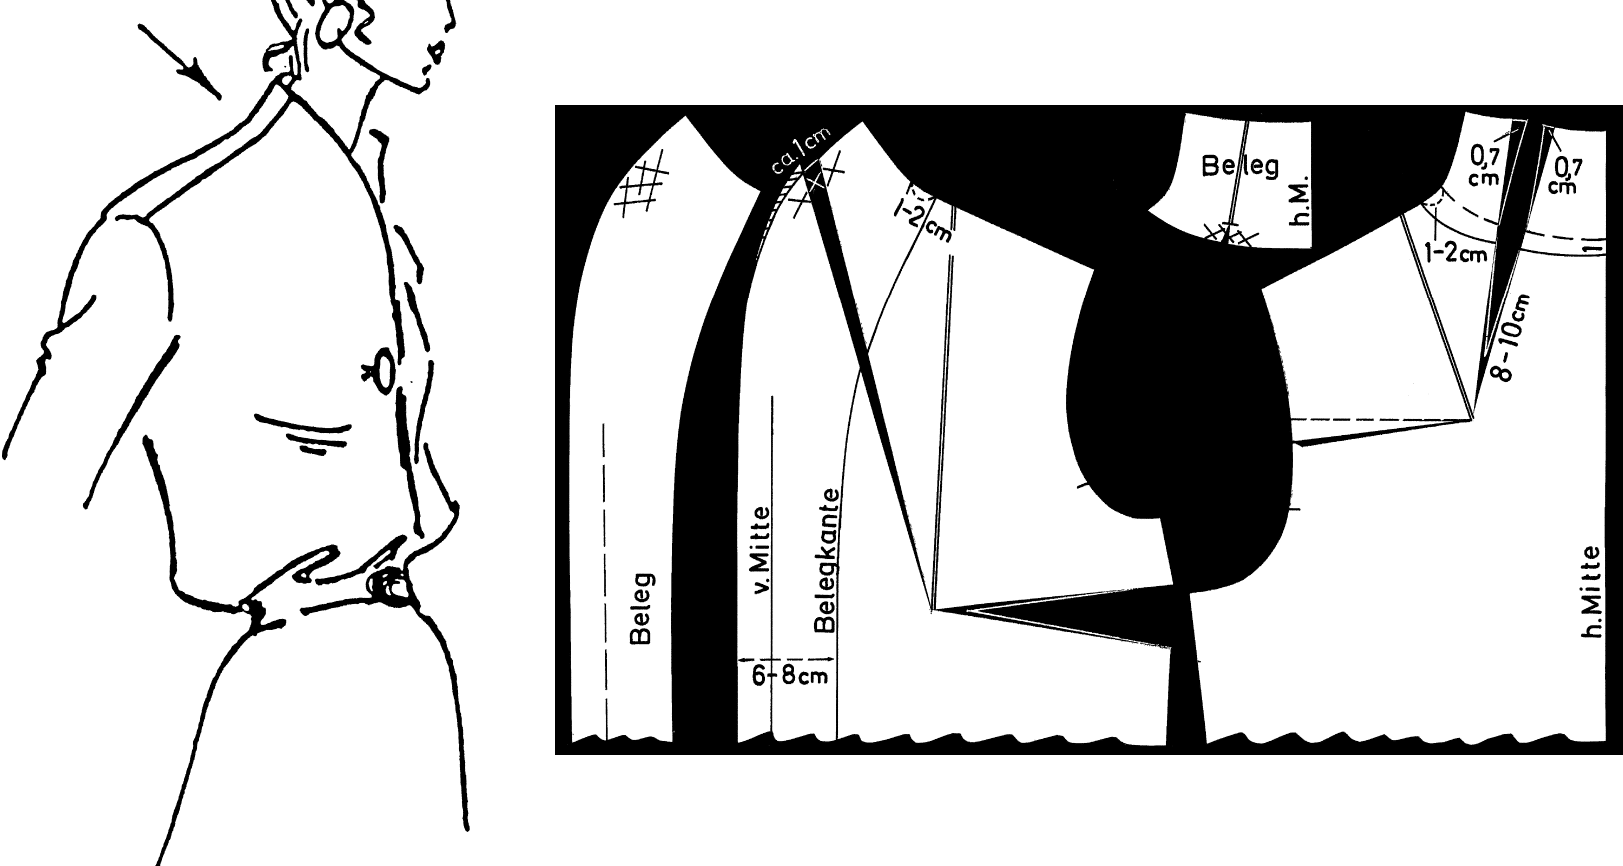 Zu sehen ist die Schnittkonstruktion eines angeschnittenen Stehkragens einer Damenbluse.